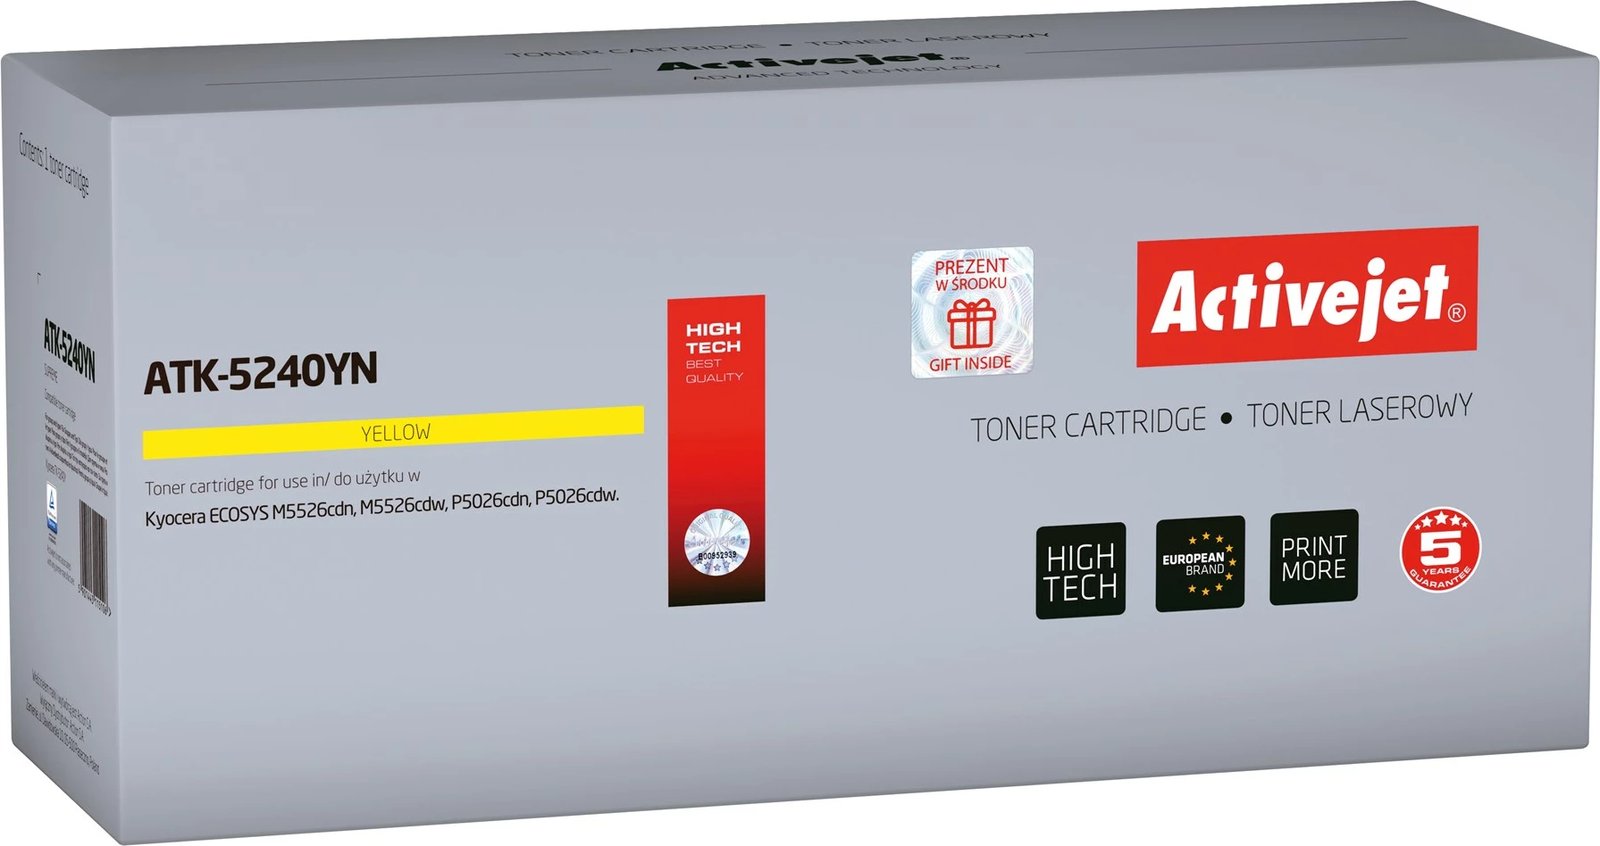 Toner zëvendësues Activejet ATK-5240YN për printerët Kyocera, 3000 faqe, i verdhë